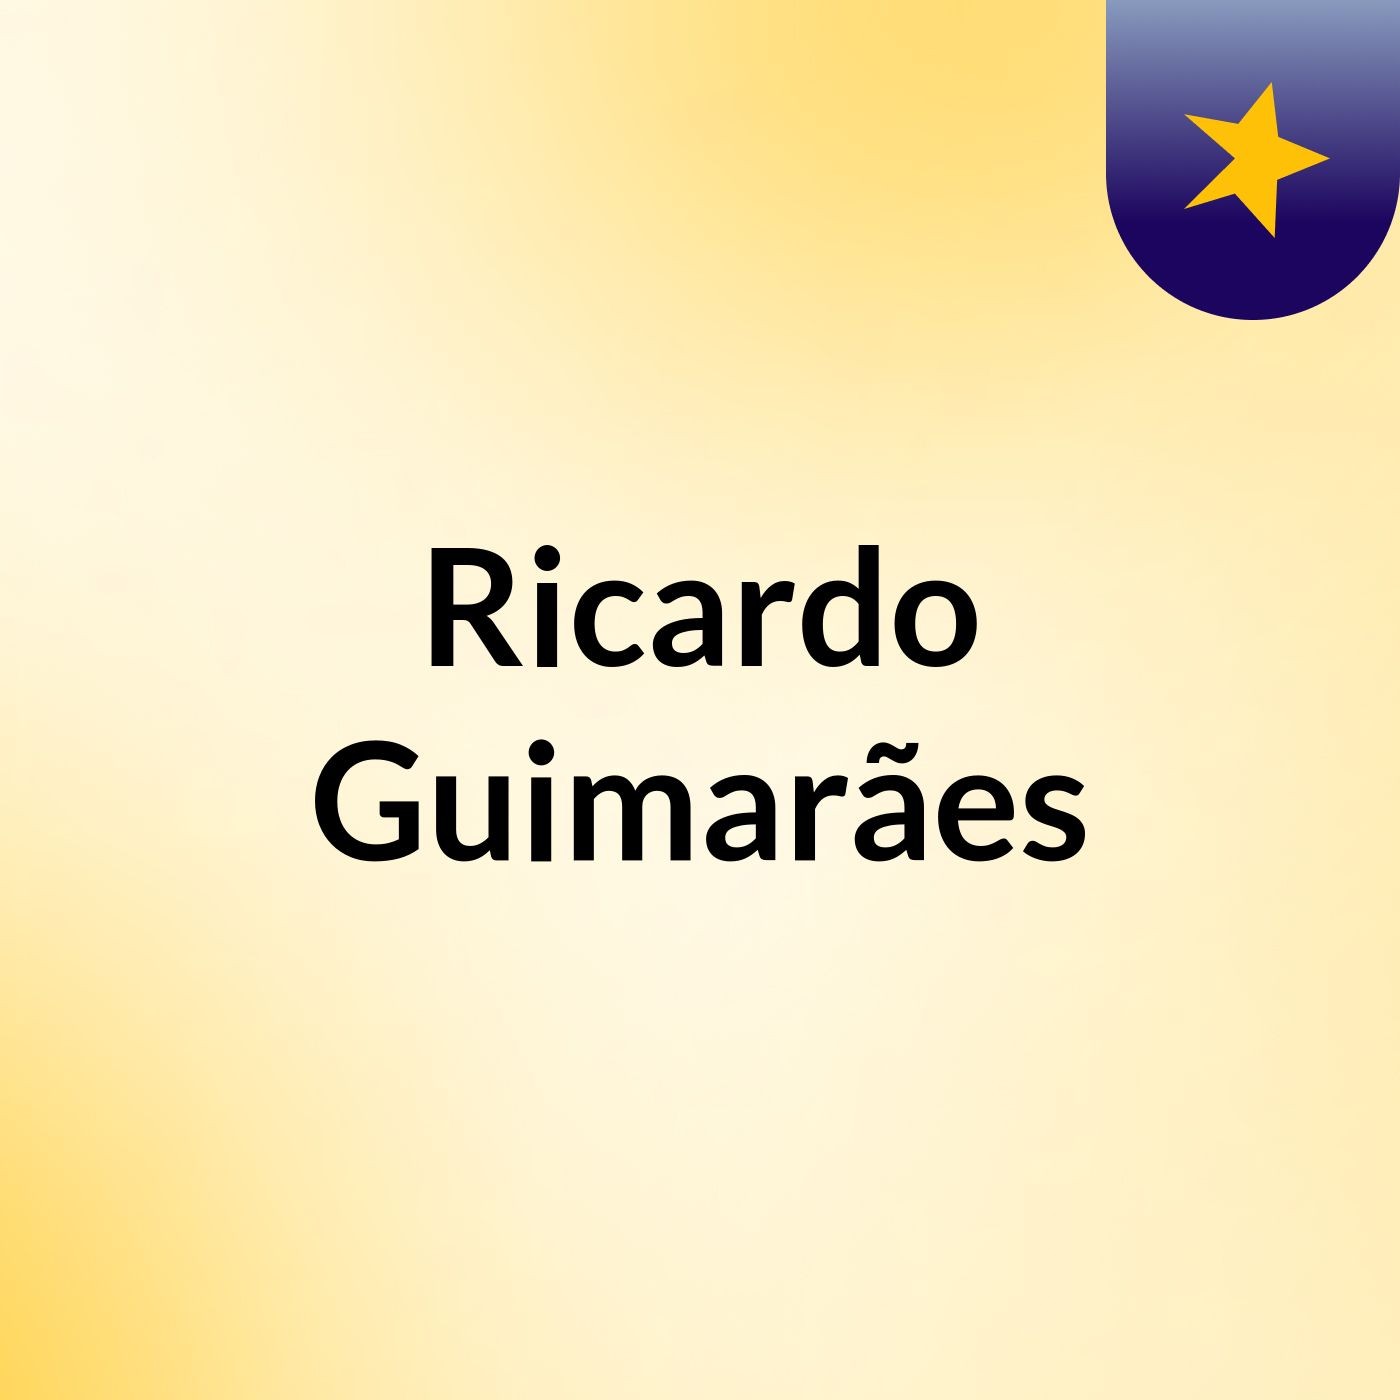 Ricardo Guimarães